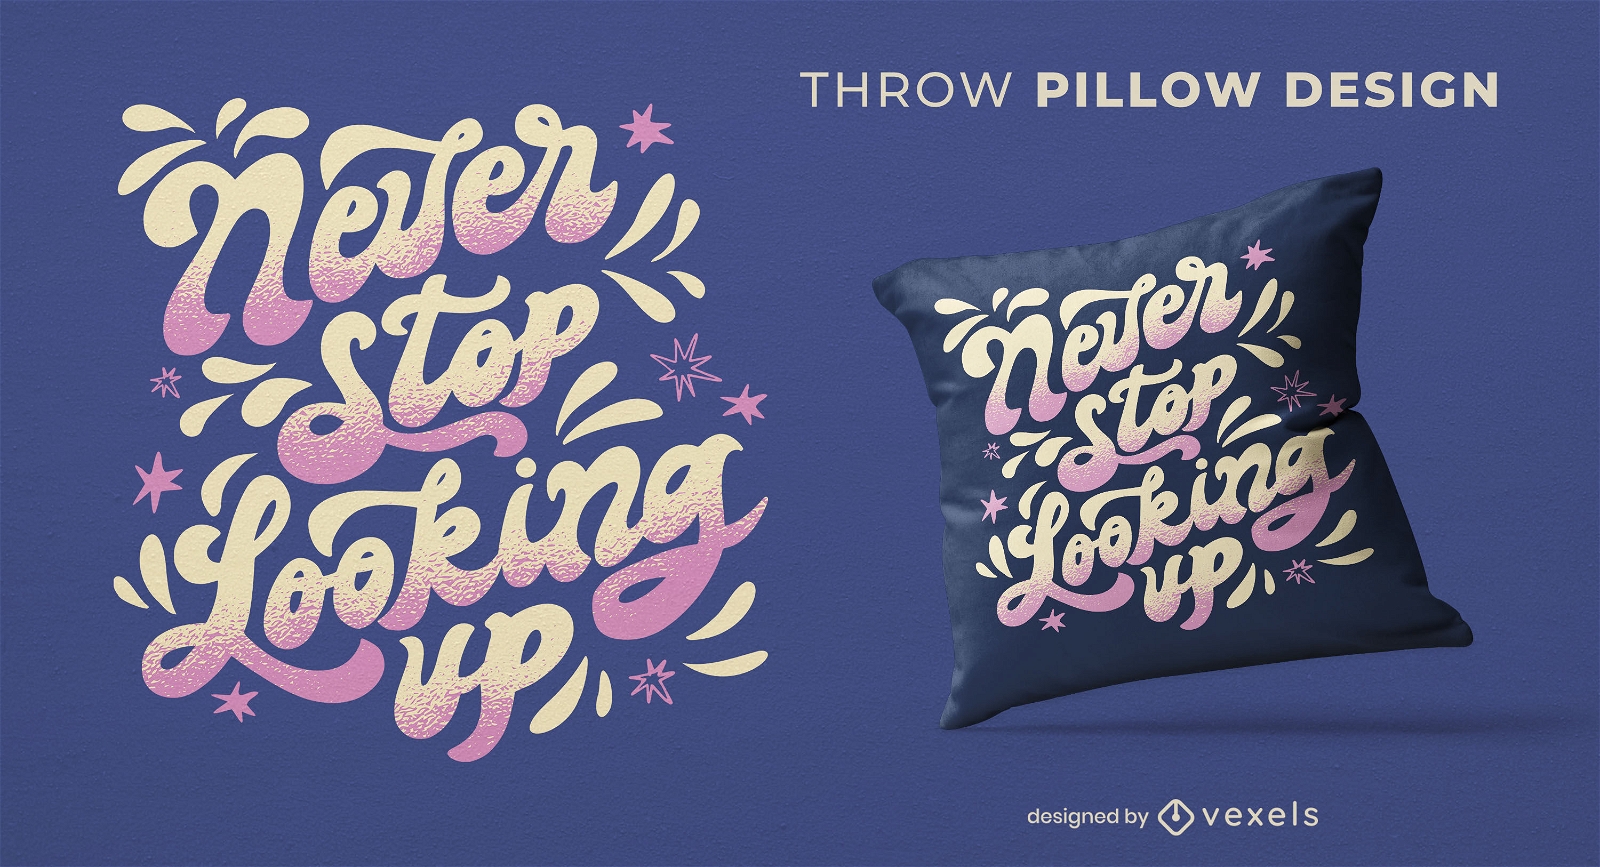 Look up throw pillow design